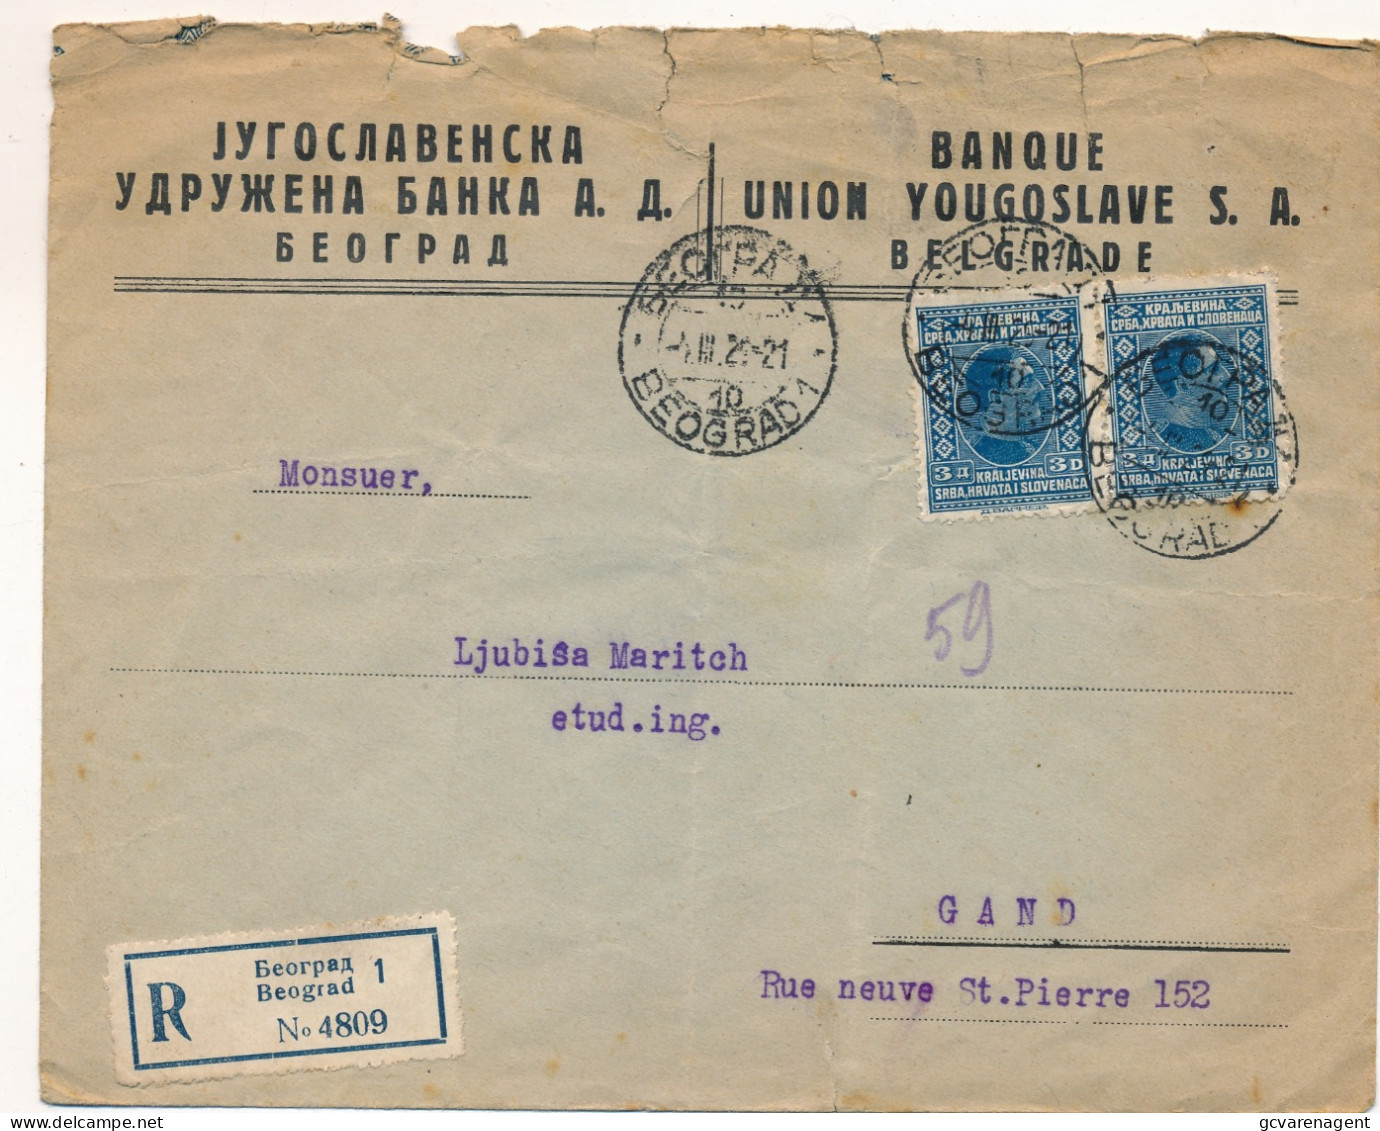 ENVELOPPE 1925 RECOMMANDE BEOGRAD - GAND   BANQUE UNION YOUGOSLAVE S.1. BELGRADE   2 SCANS - Lettres & Documents